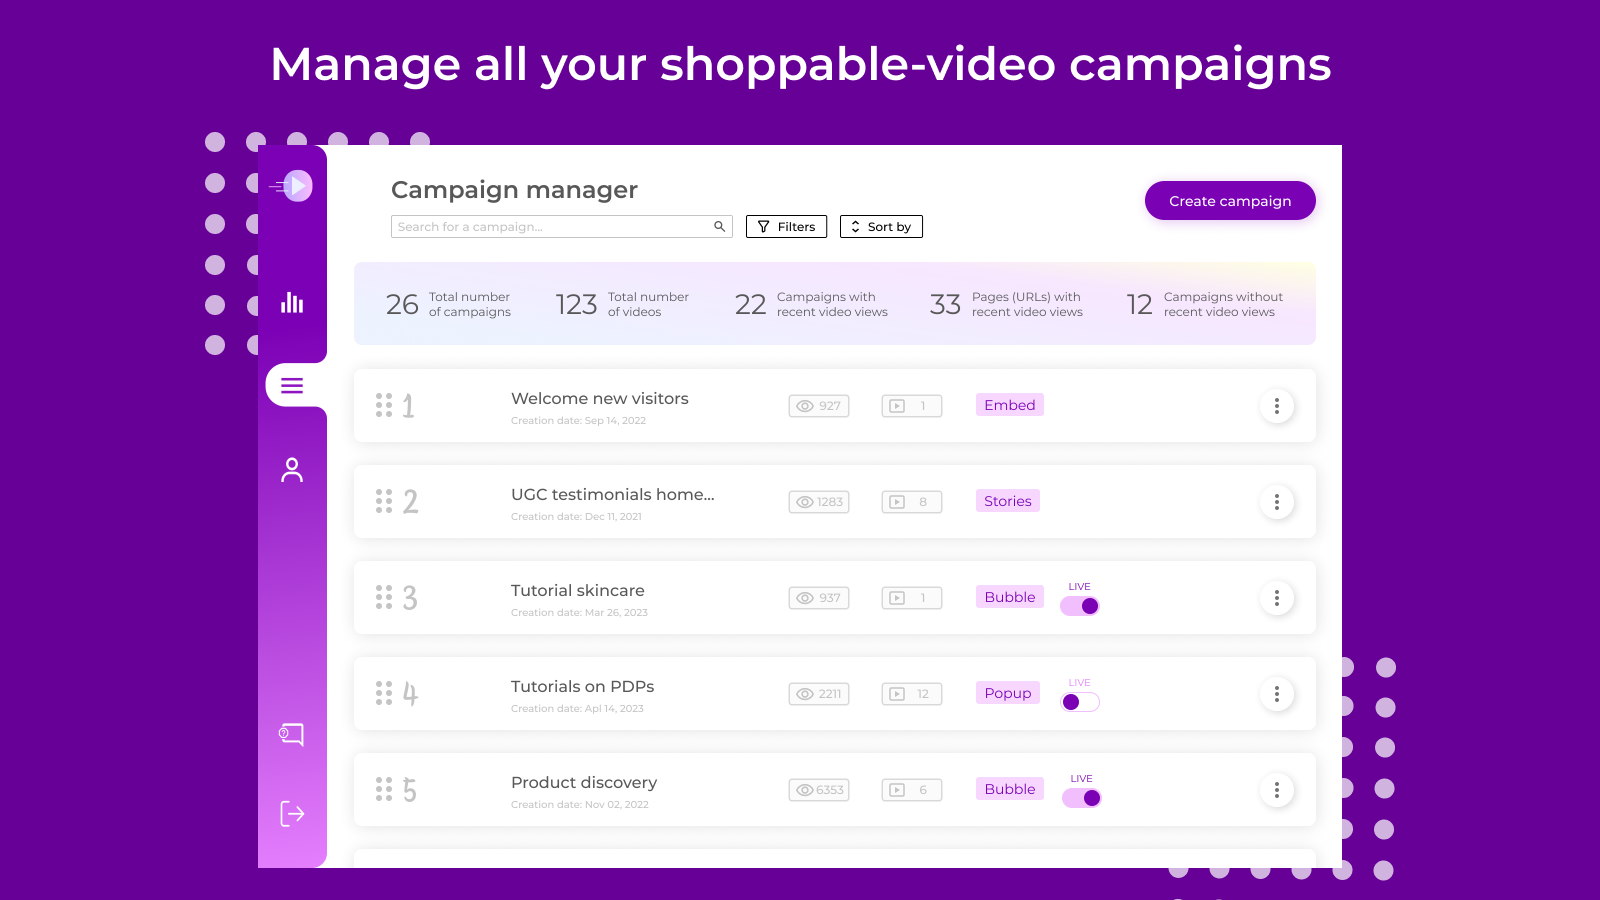 Verwalten Sie alle Ihre shoppable-Video-Kampagnen